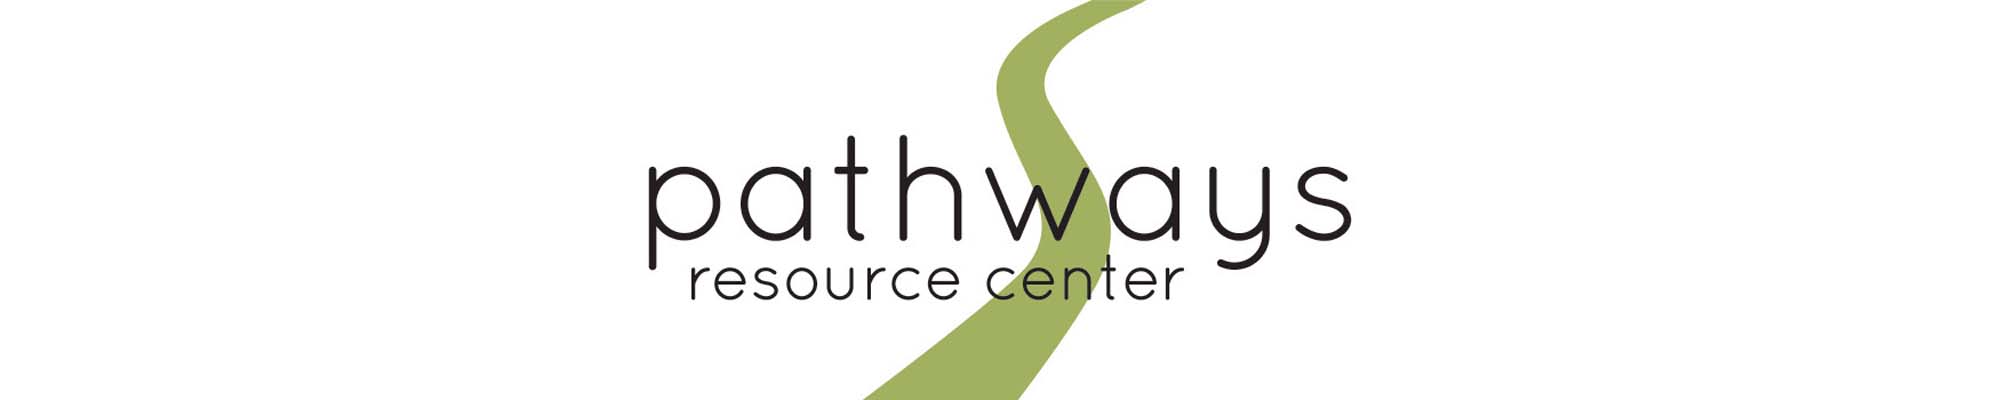 Pathways Resource Center header image